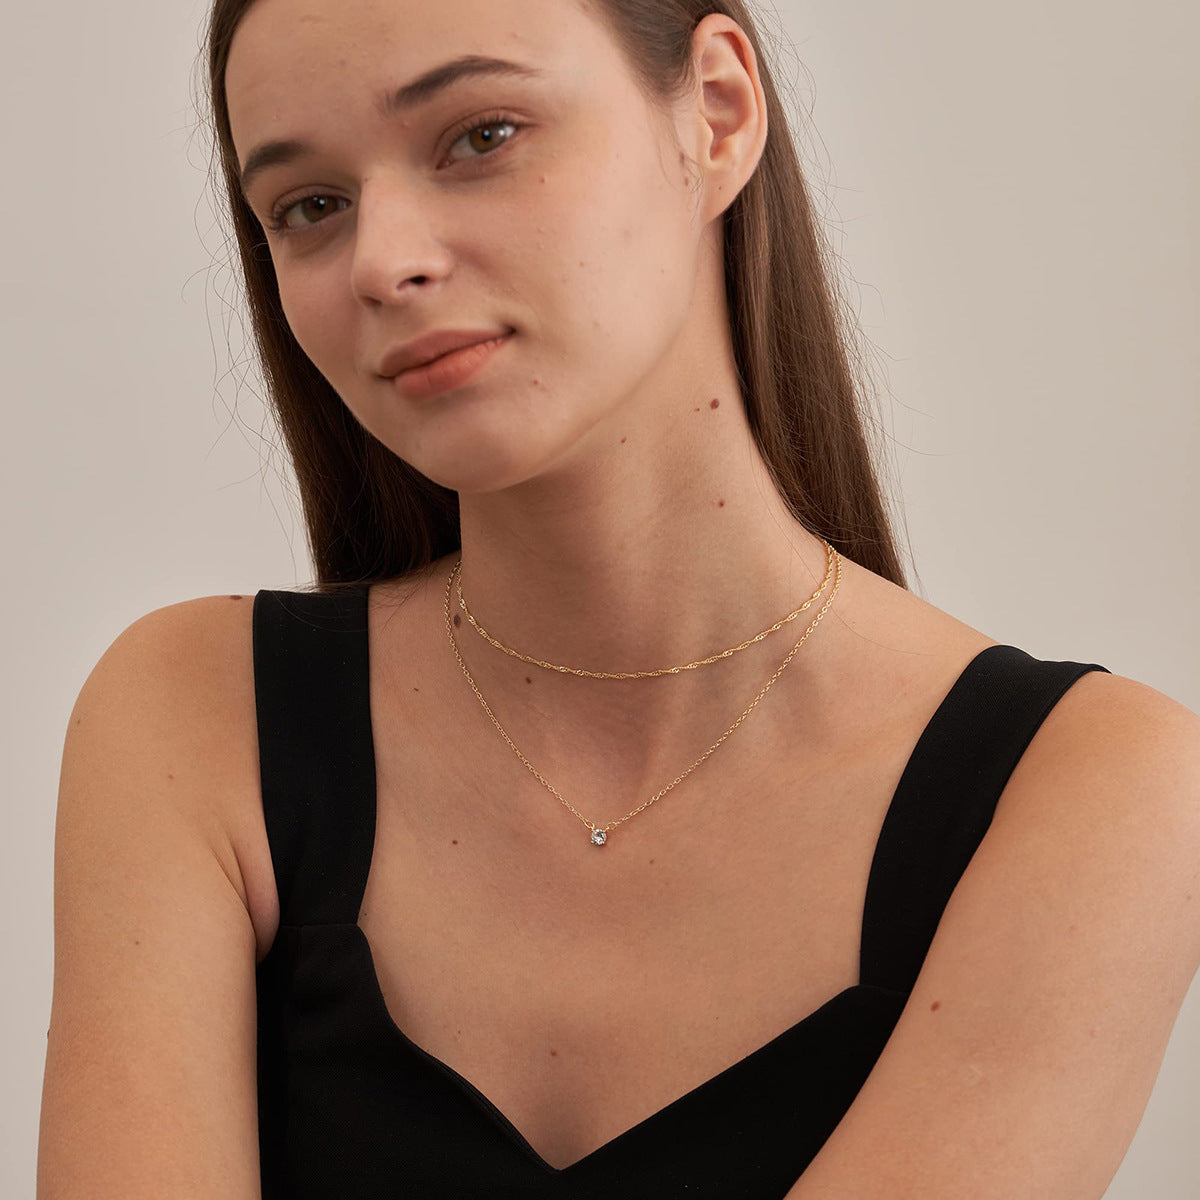 Bulk Diamond Necklaces for Women Detachable Trendy Gold Double-Layer Necklaces Pendant Necklace Gifts Wholesale